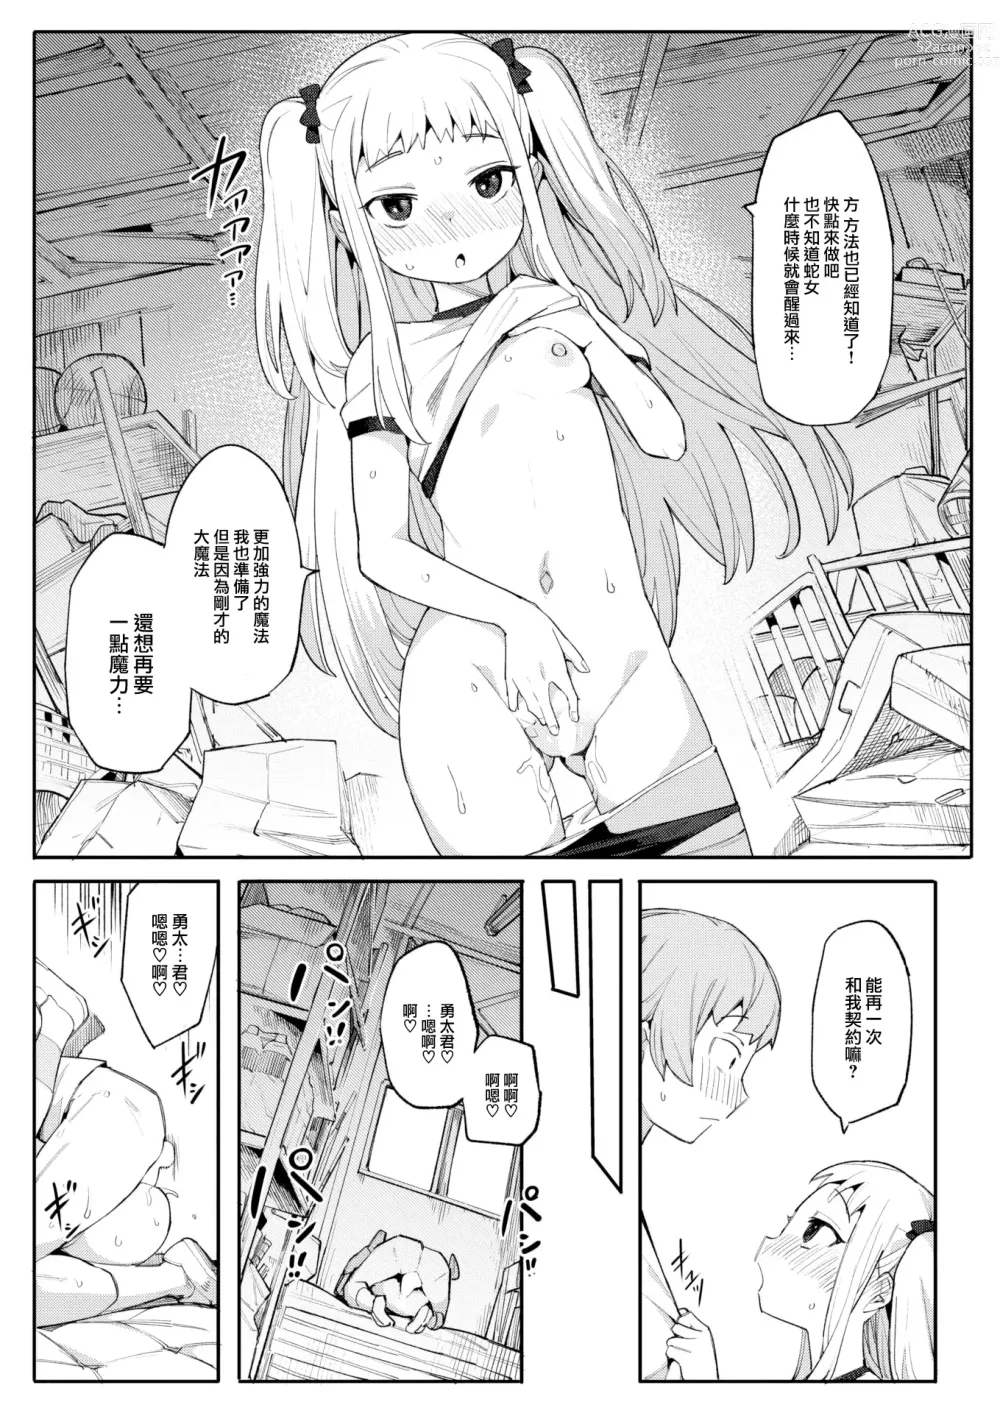 Page 19 of manga Majo wa hoshikute shikata ga nai!